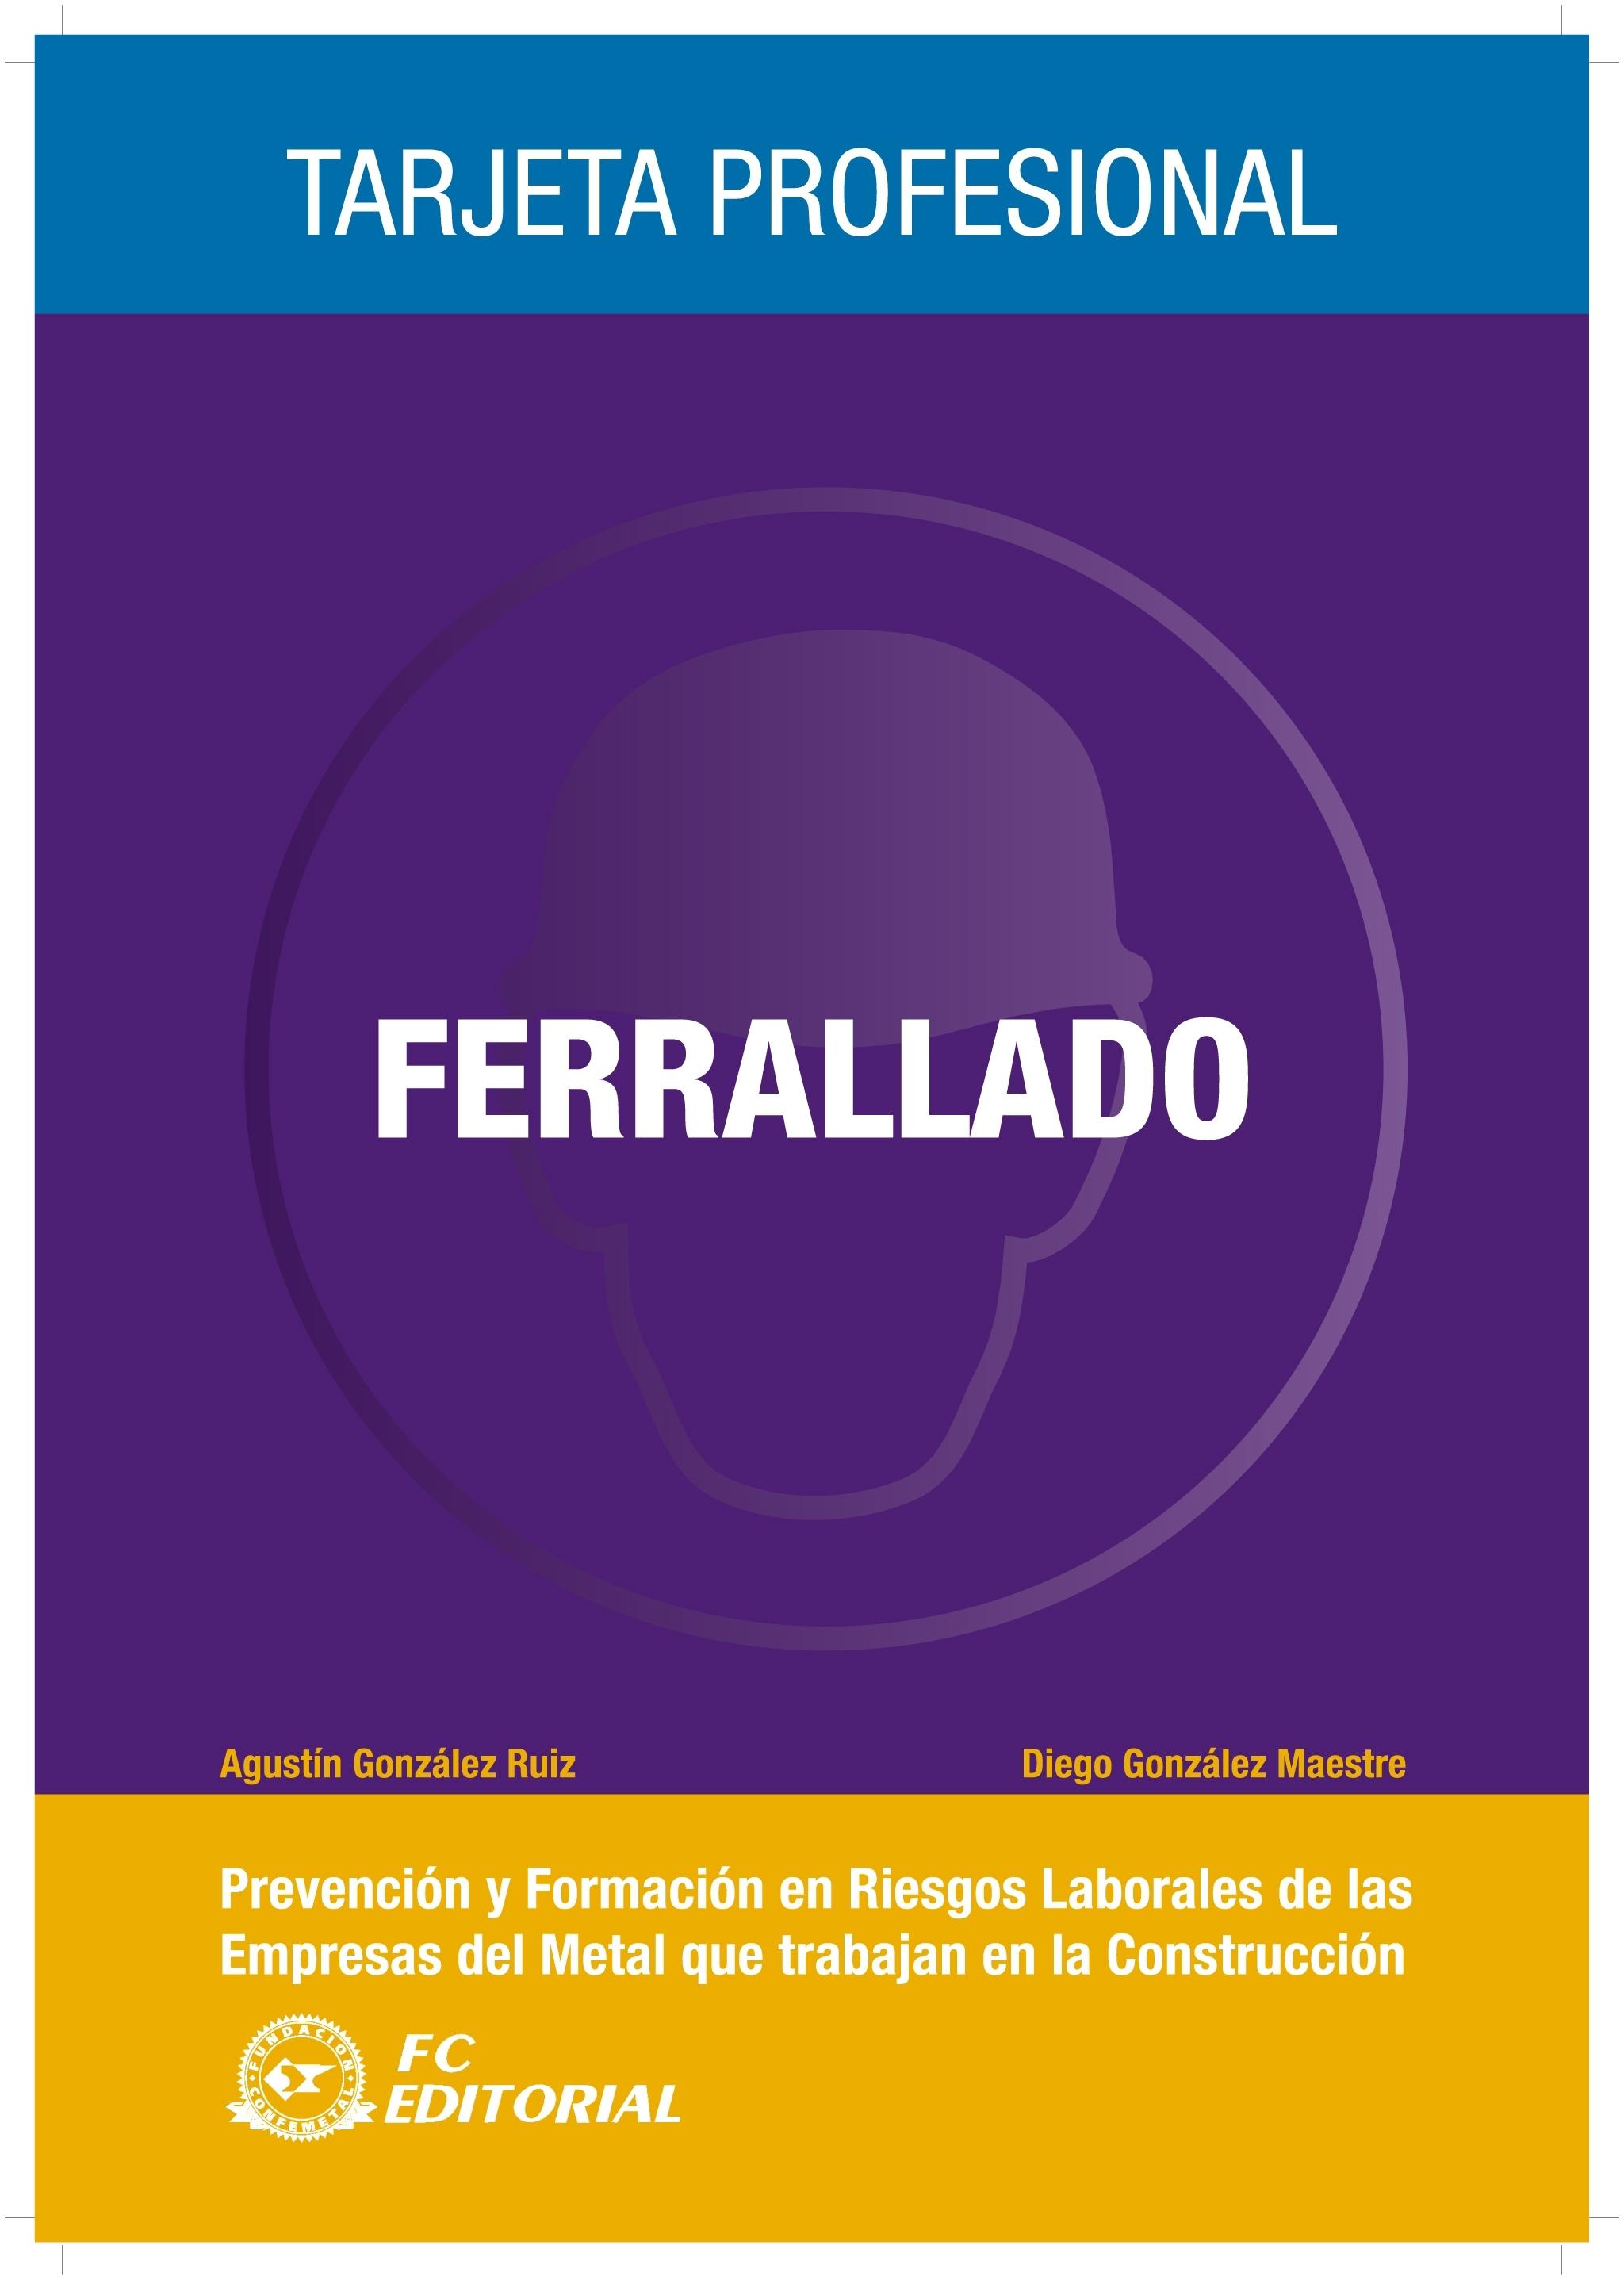 FERRALLADO "TARJETA PROFESIONAL METAL - CONSTRUCCIÓN". 